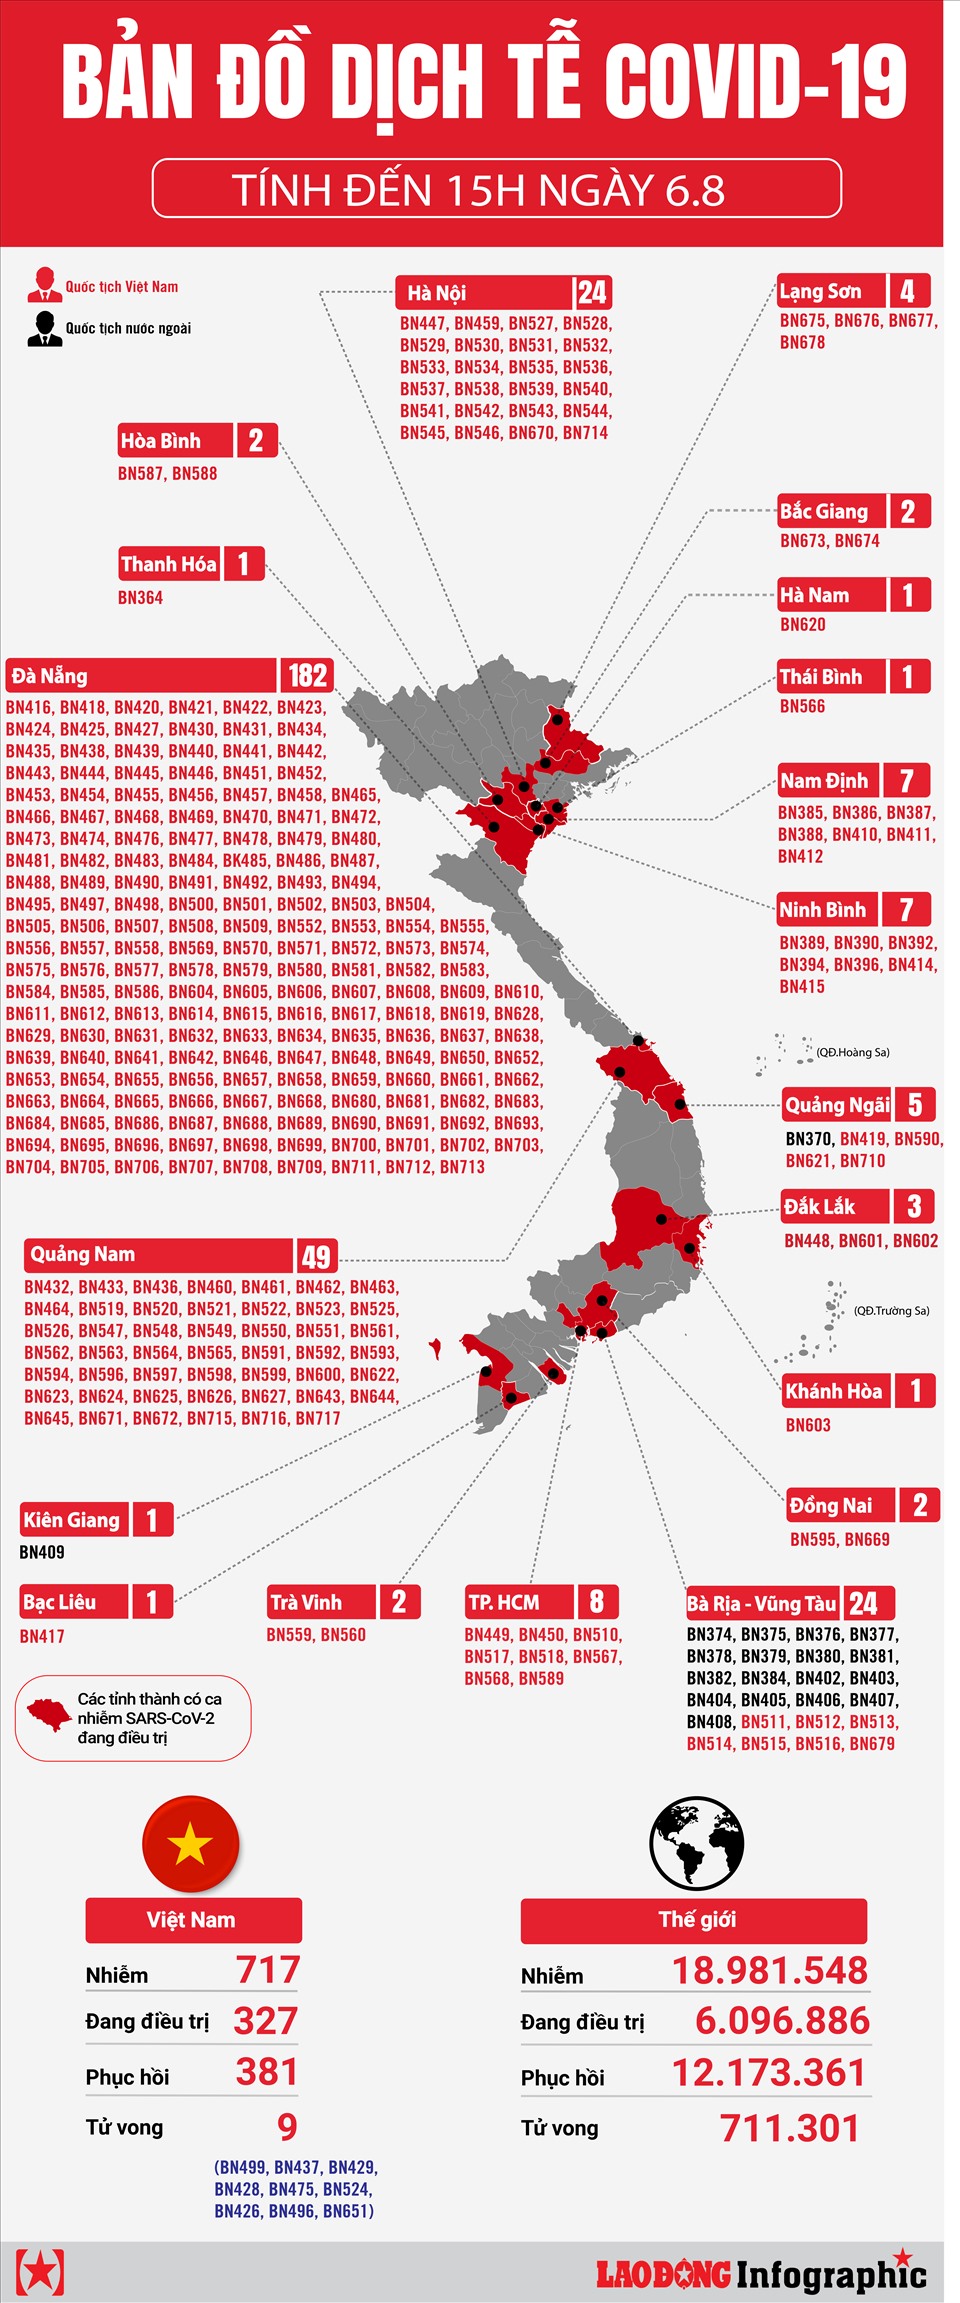 Bản đồ dịch tễ Covid-19 Việt Nam
Bản đồ dịch tễ Covid-19 Việt Nam là công cụ hoàn hảo để giúp bạn cập nhật dữ liệu chính xác và đầy đủ về tình hình dịch bệnh trong cả nước. Với sự hỗ trợ của các chuyên gia y tế hàng đầu, bản đồ này cập nhật dữ liệu mới nhất, giúp mọi người có đầy đủ thông tin để chuẩn bị cho bất kỳ tình huống nào. Hãy truy cập ngay để đón nhận những thông tin mới nhất từ bản đồ này.